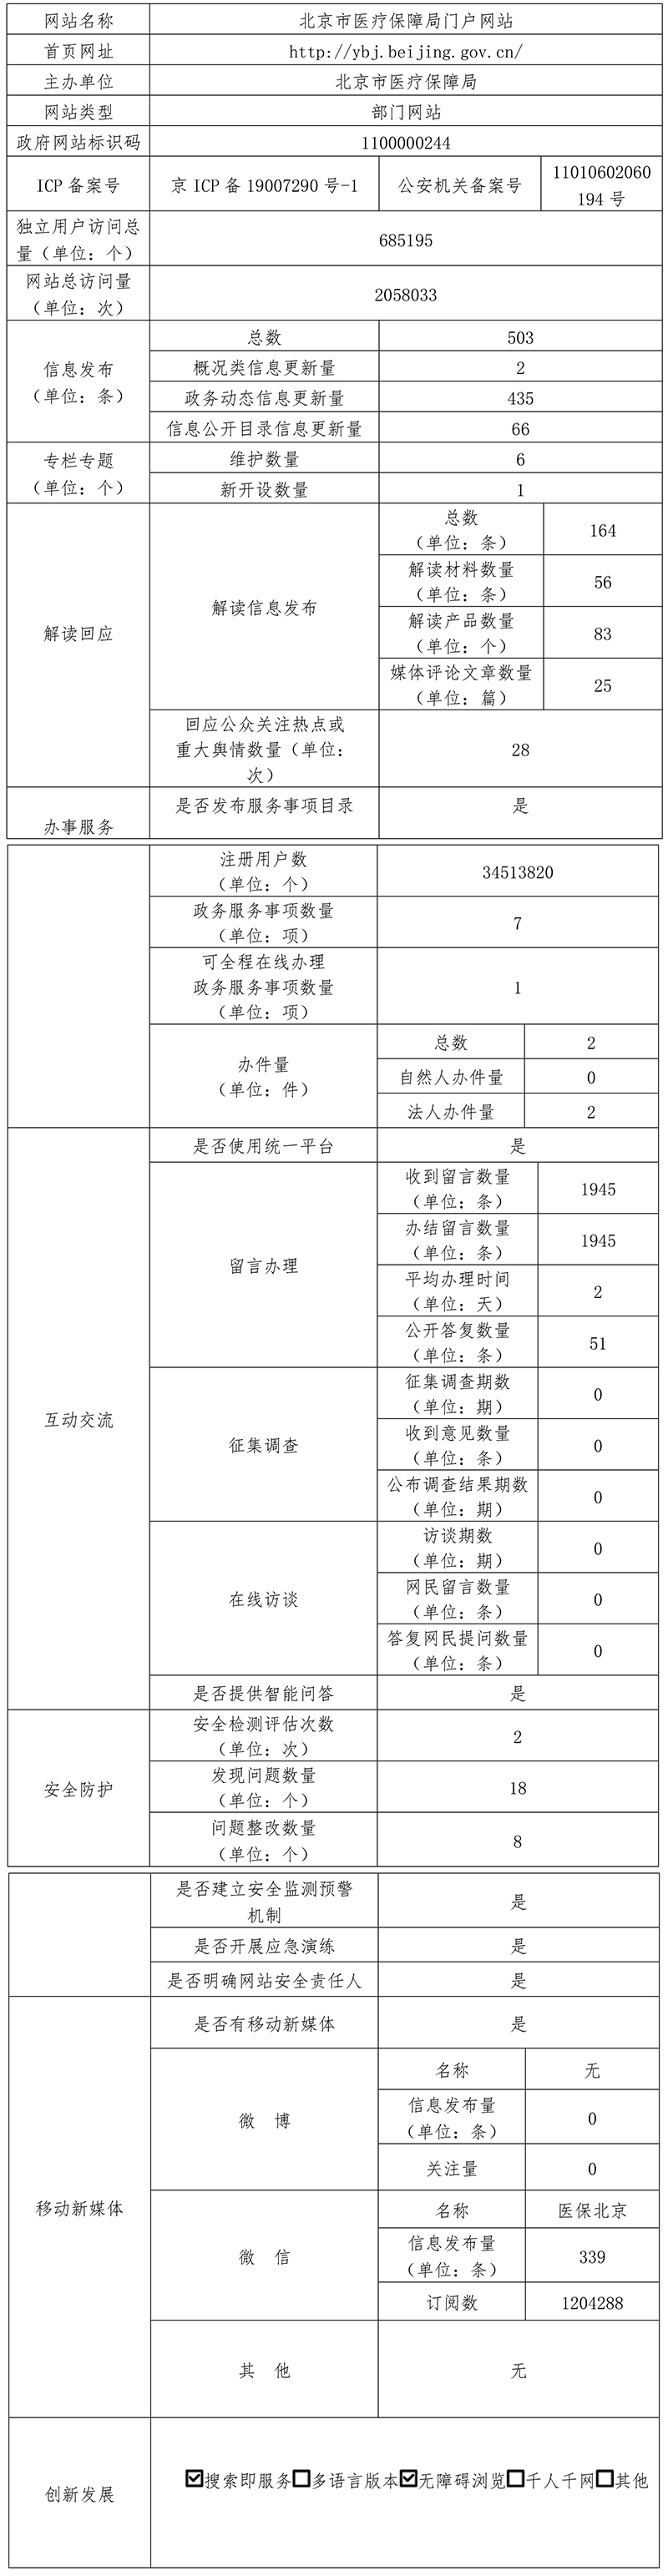 北京市醫療保障局2021年政府網站年度工作報表